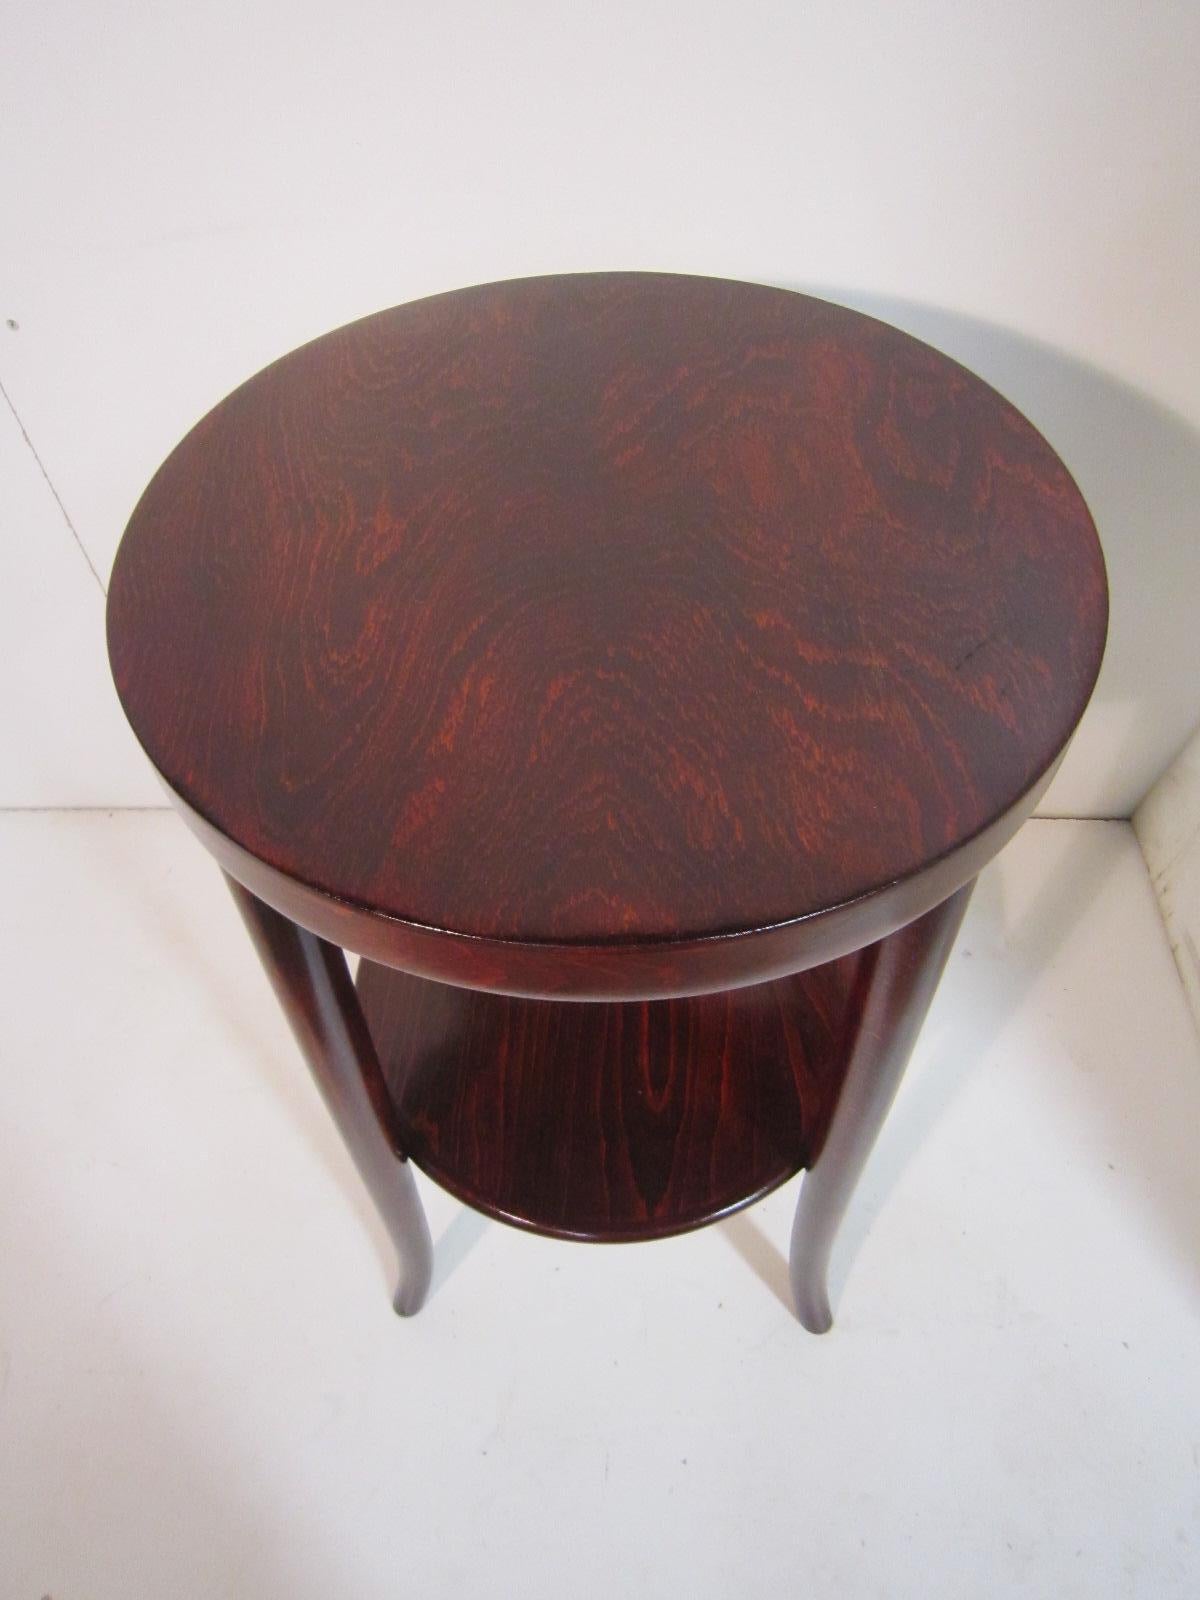 Jugendstil Original Austrian Small Round Bentwood Jungenstil Side Table with Oxblood Finish